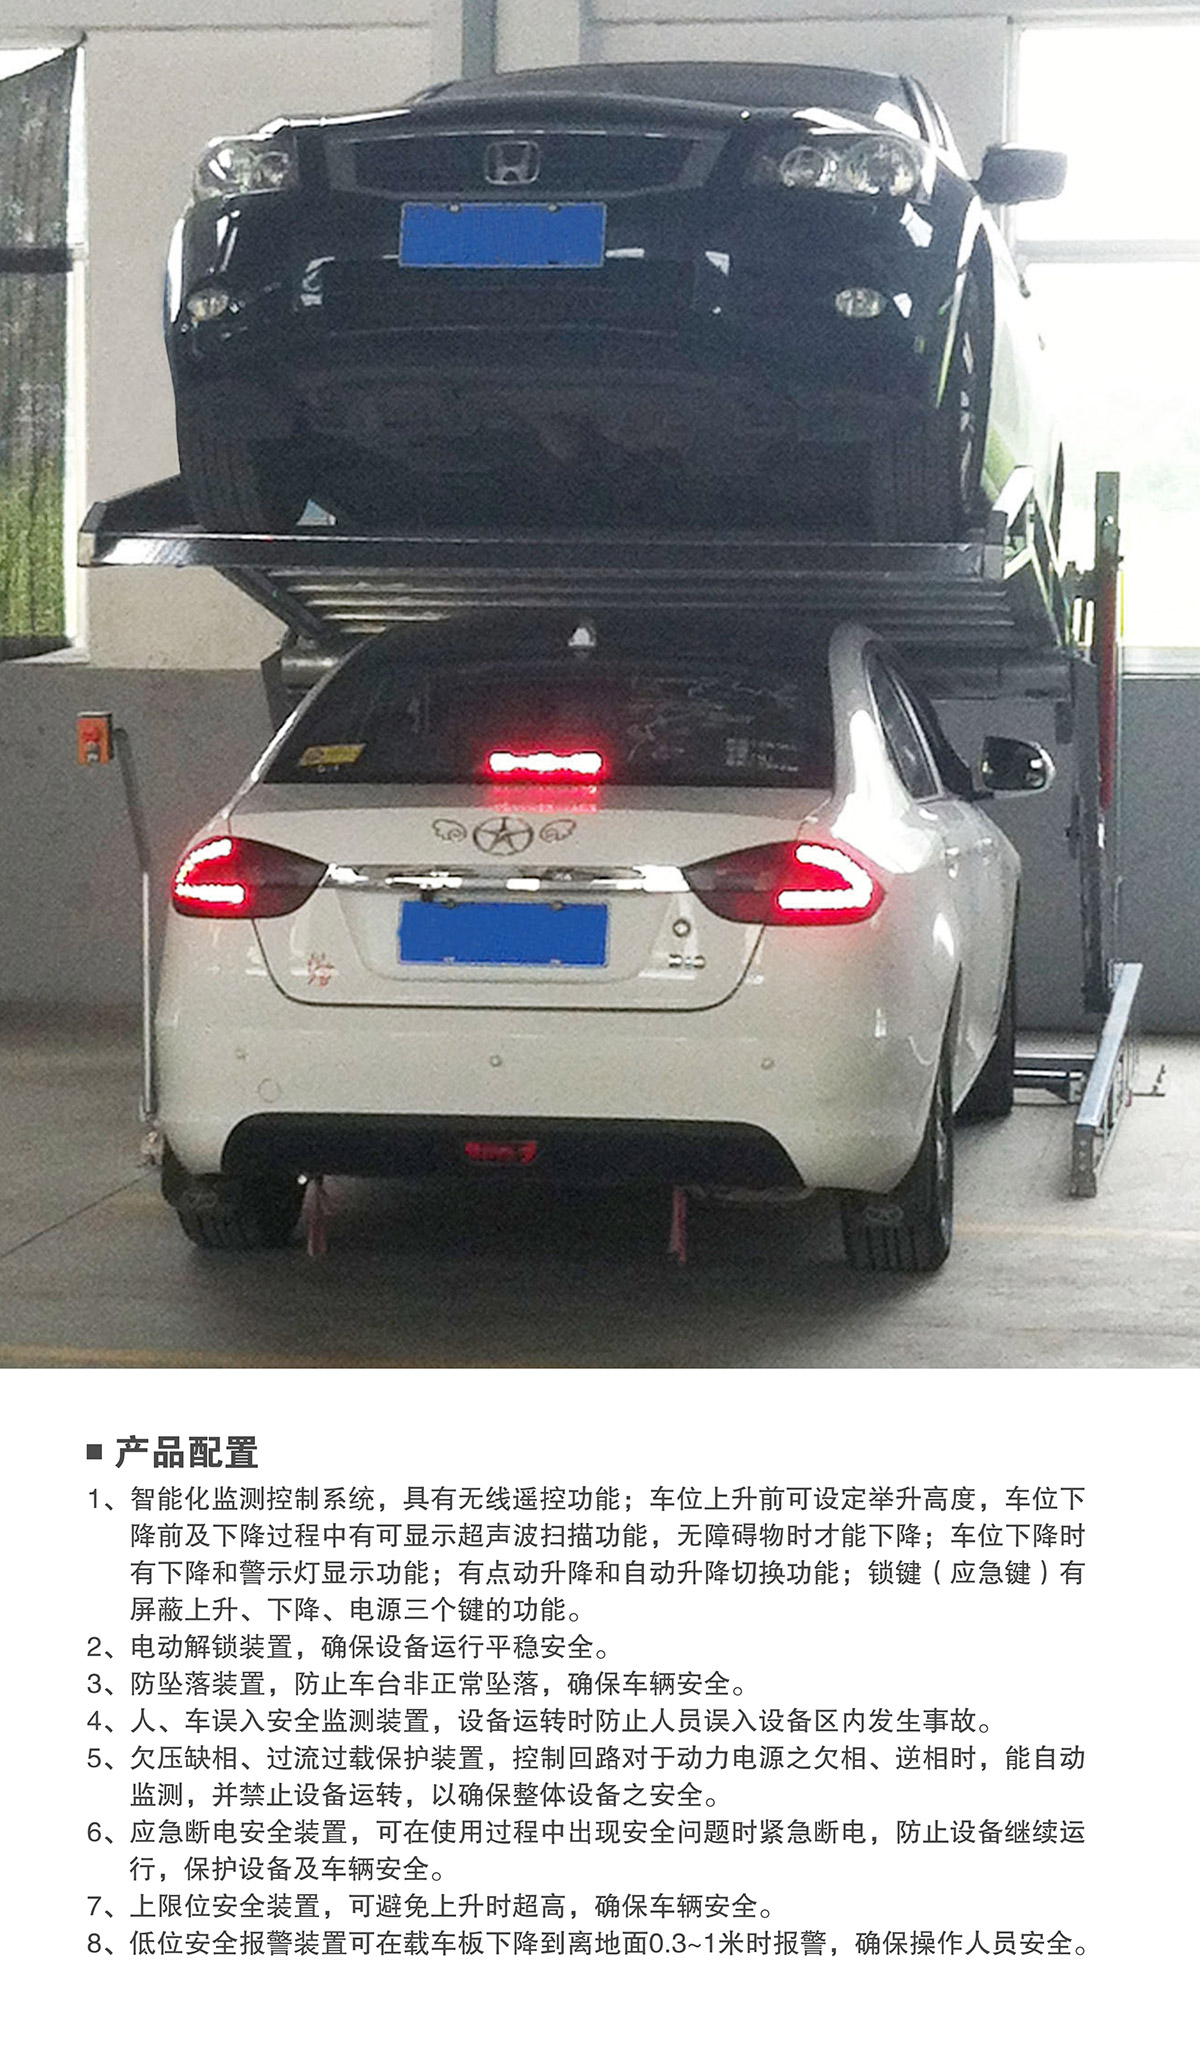 重庆俯仰式简易升降立体停车设备产品配置.jpg